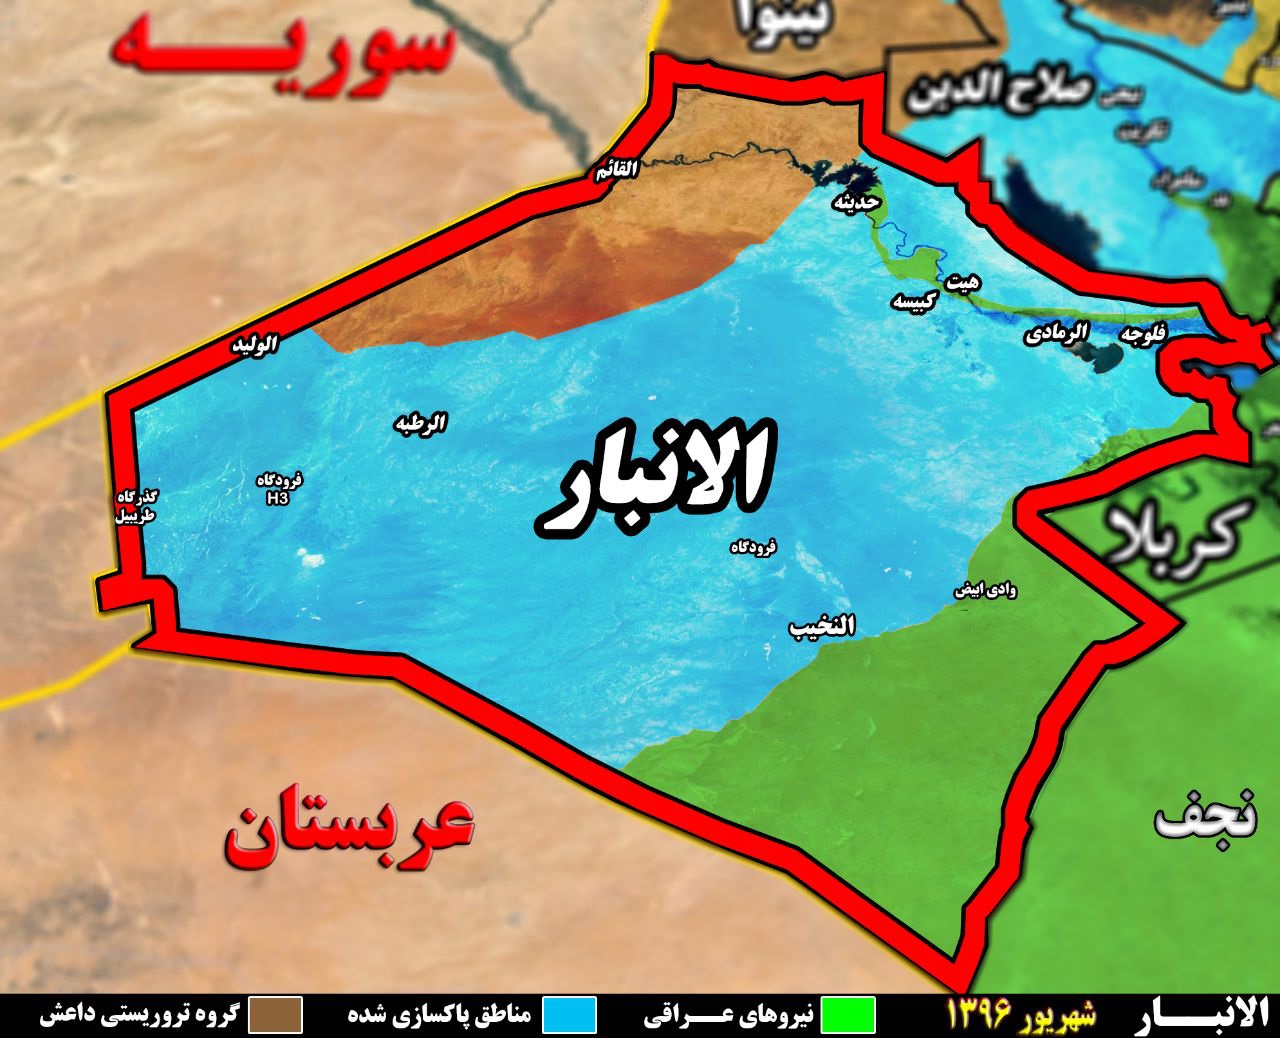 2075841 - انهدام پایگاه راهبردی داعش در مناطق صحرایی غرب استان الانبار + نقشه میدانی